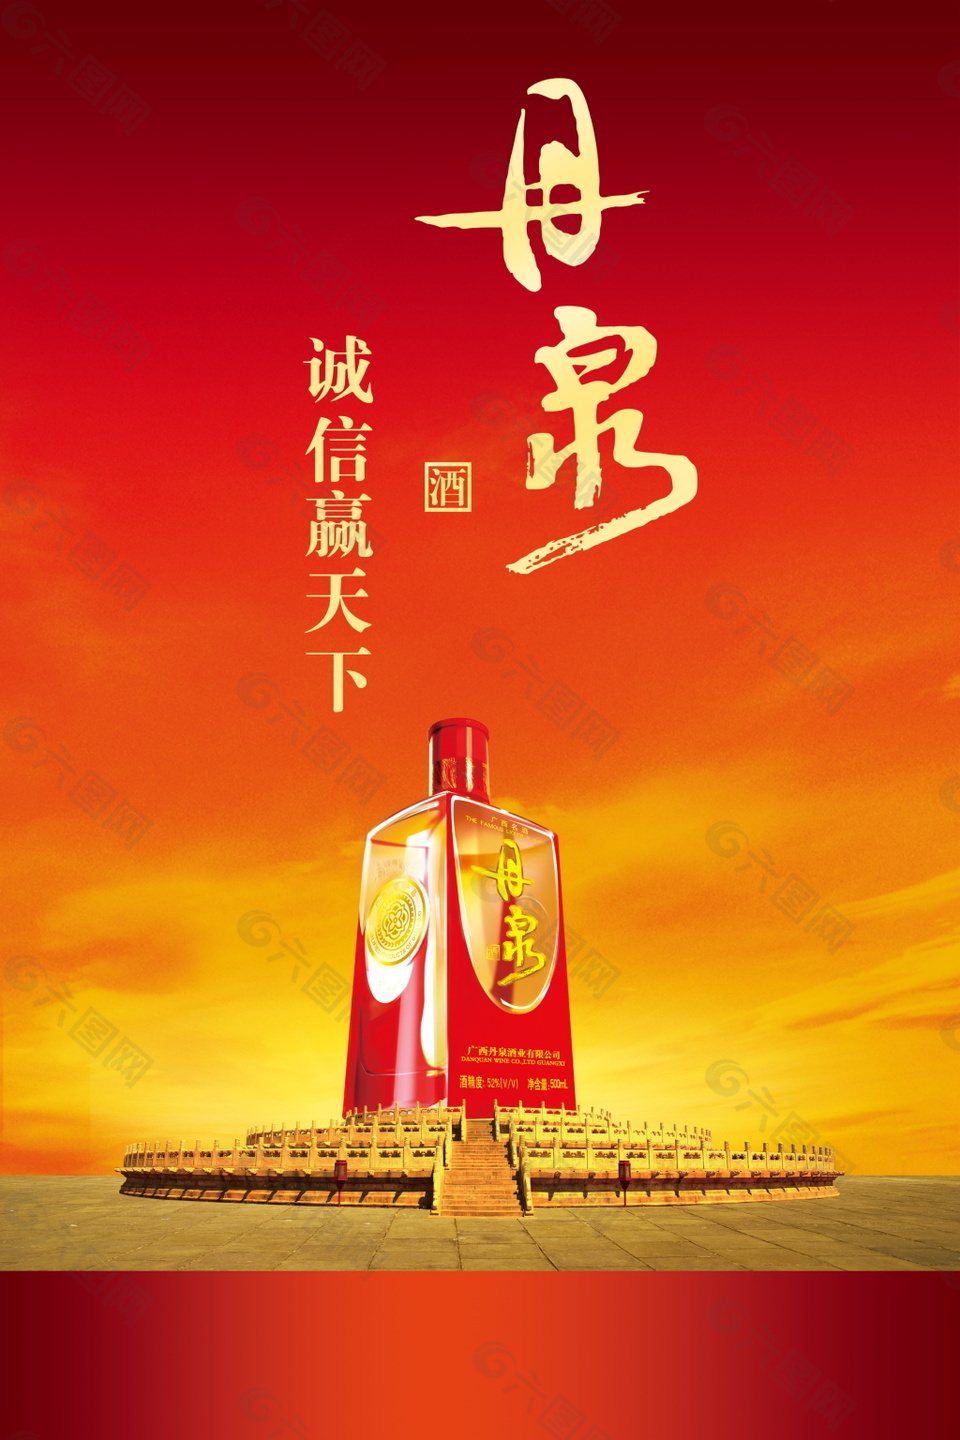 丹泉酒广告语图片